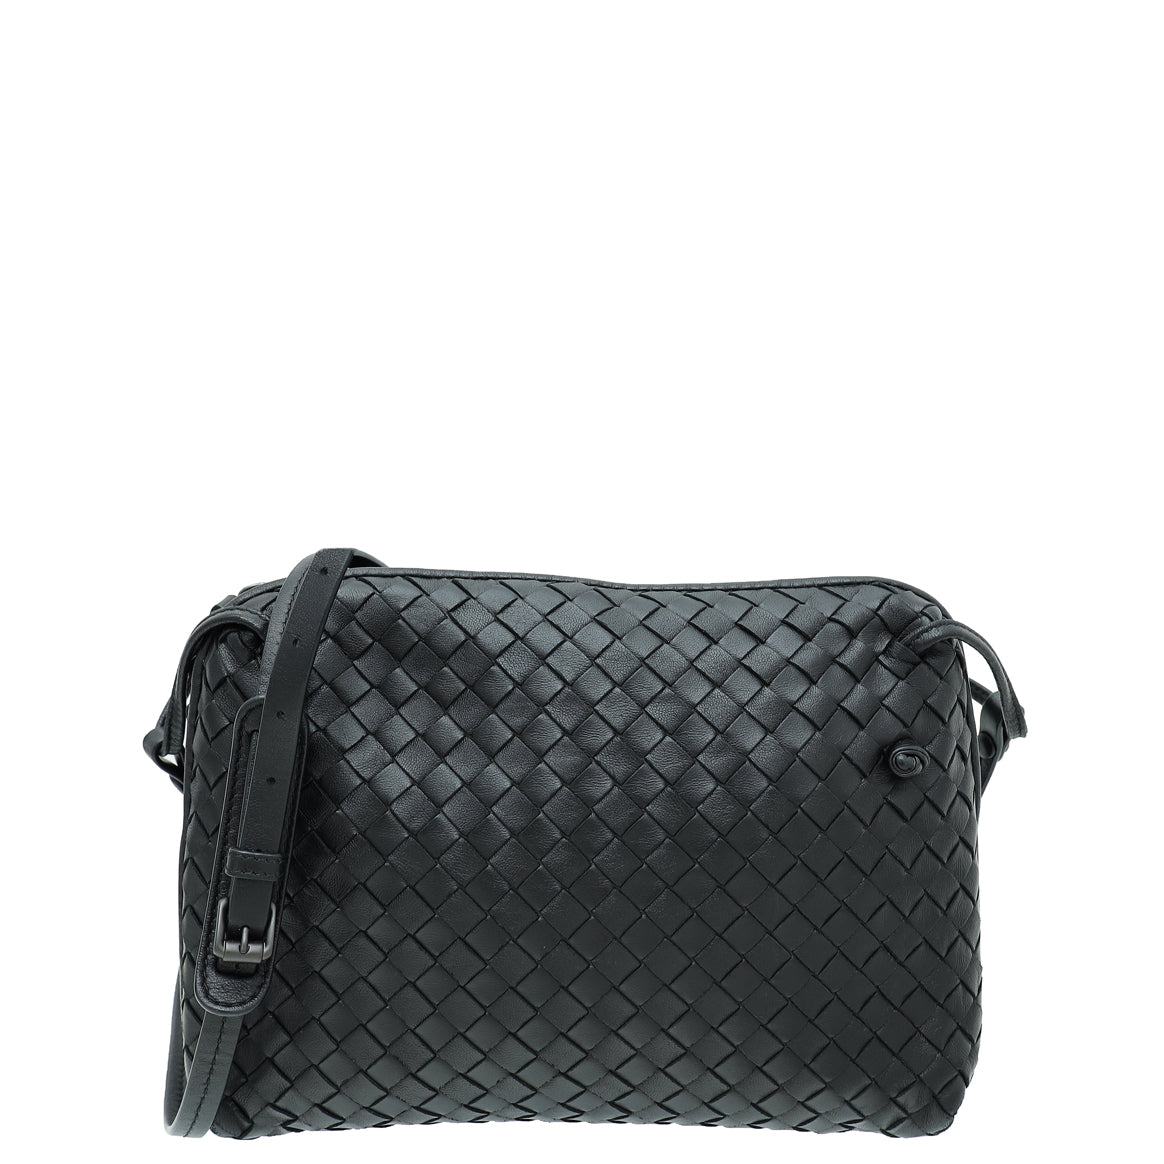 Bottega Veneta Black Intrecciato Leather Double Zip Nodini Crossbody Bag  Bottega Veneta | The Luxury Closet